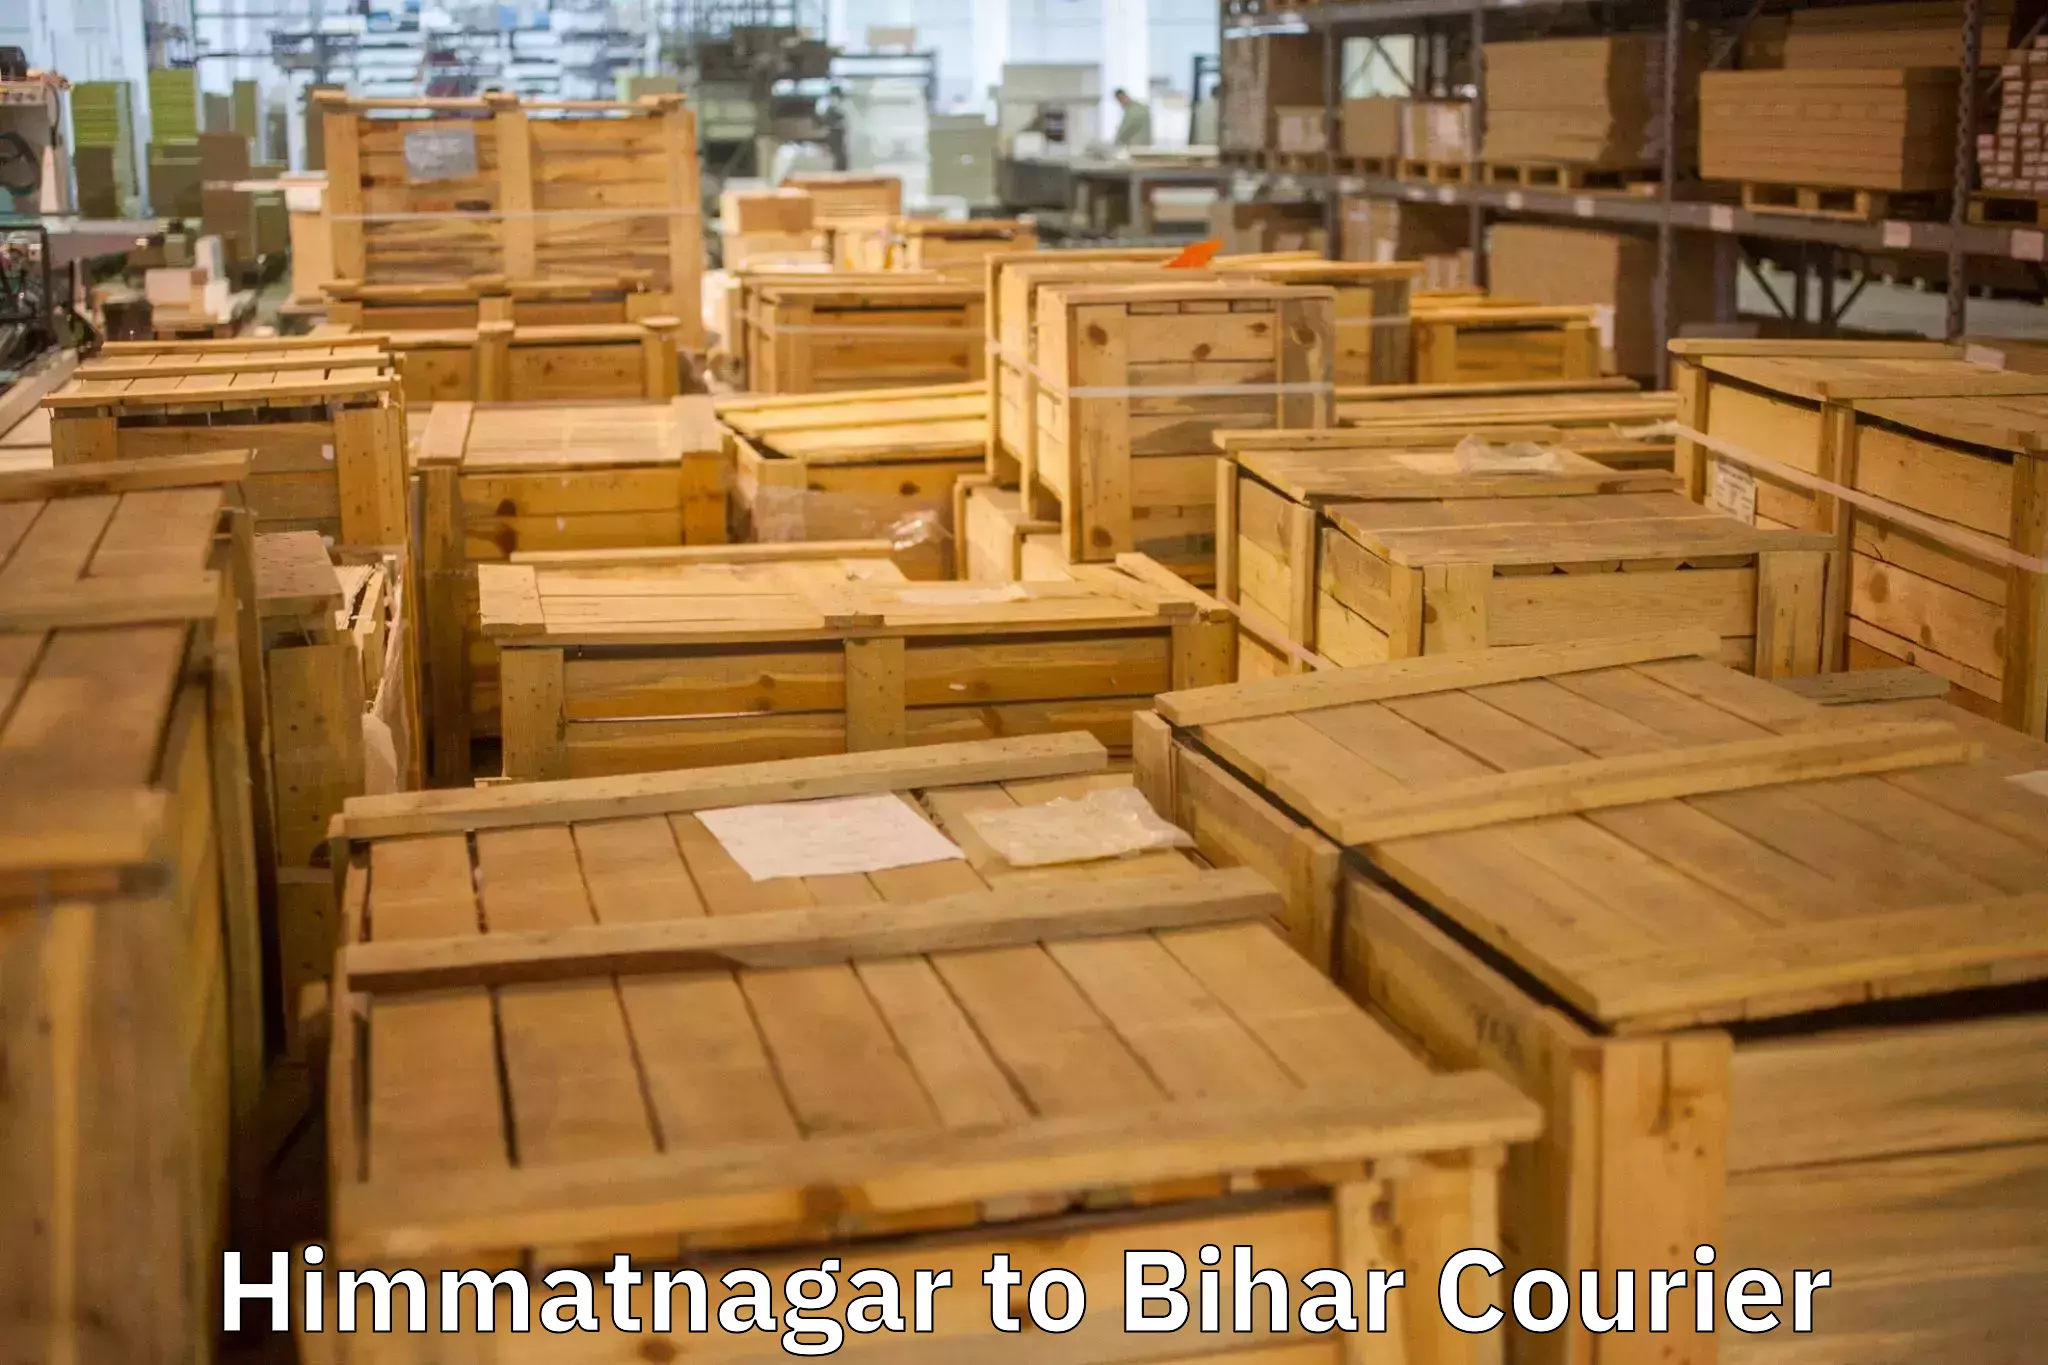 Packing and moving services Himmatnagar to Madhepura